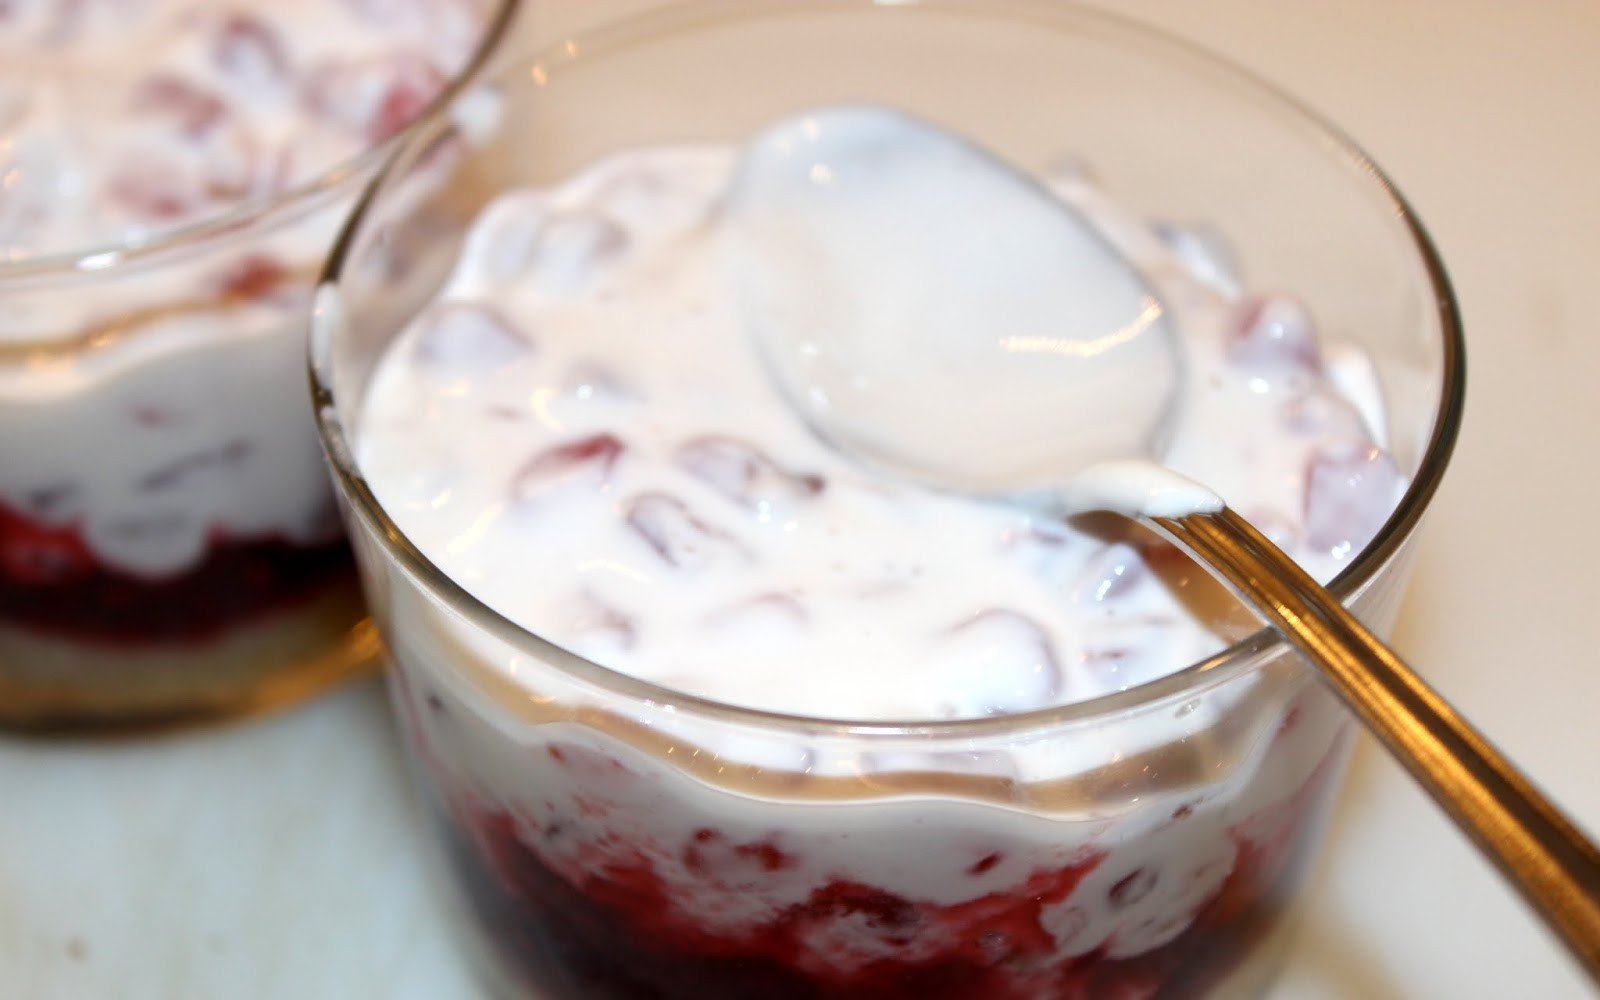 iogurt grec magrana rom pinyons caramellitzats pas18